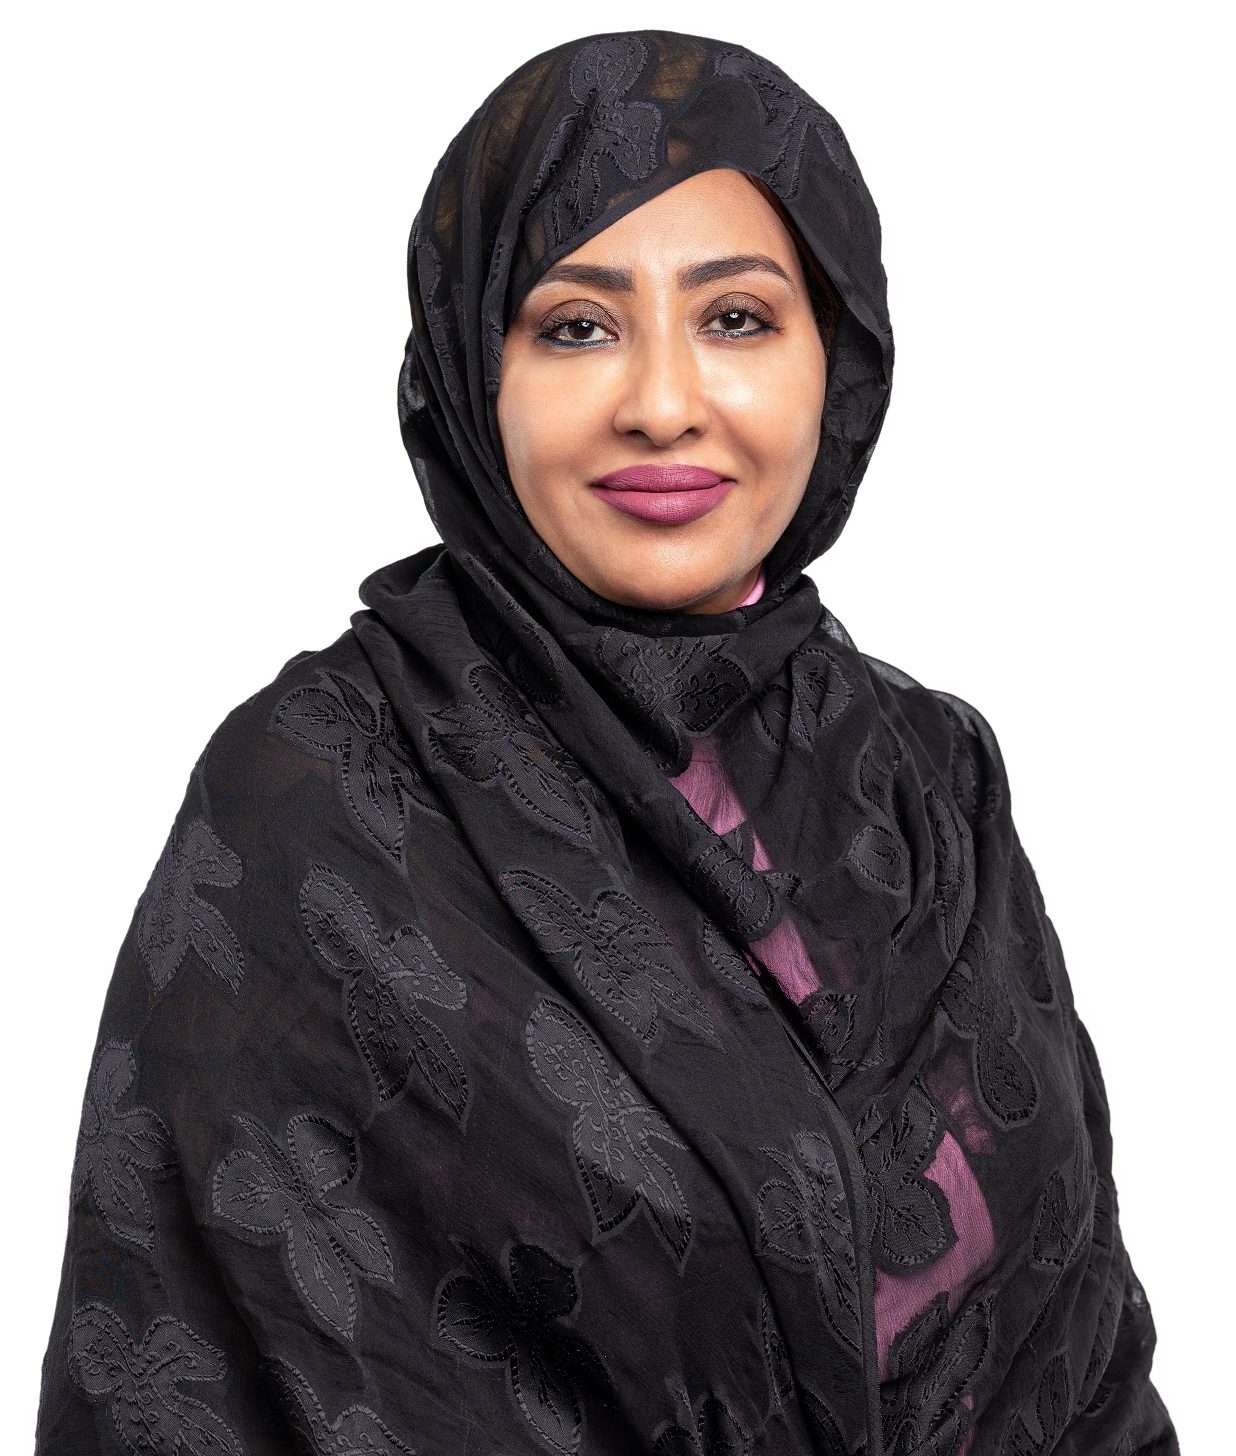 Dr. Afra Awadalla